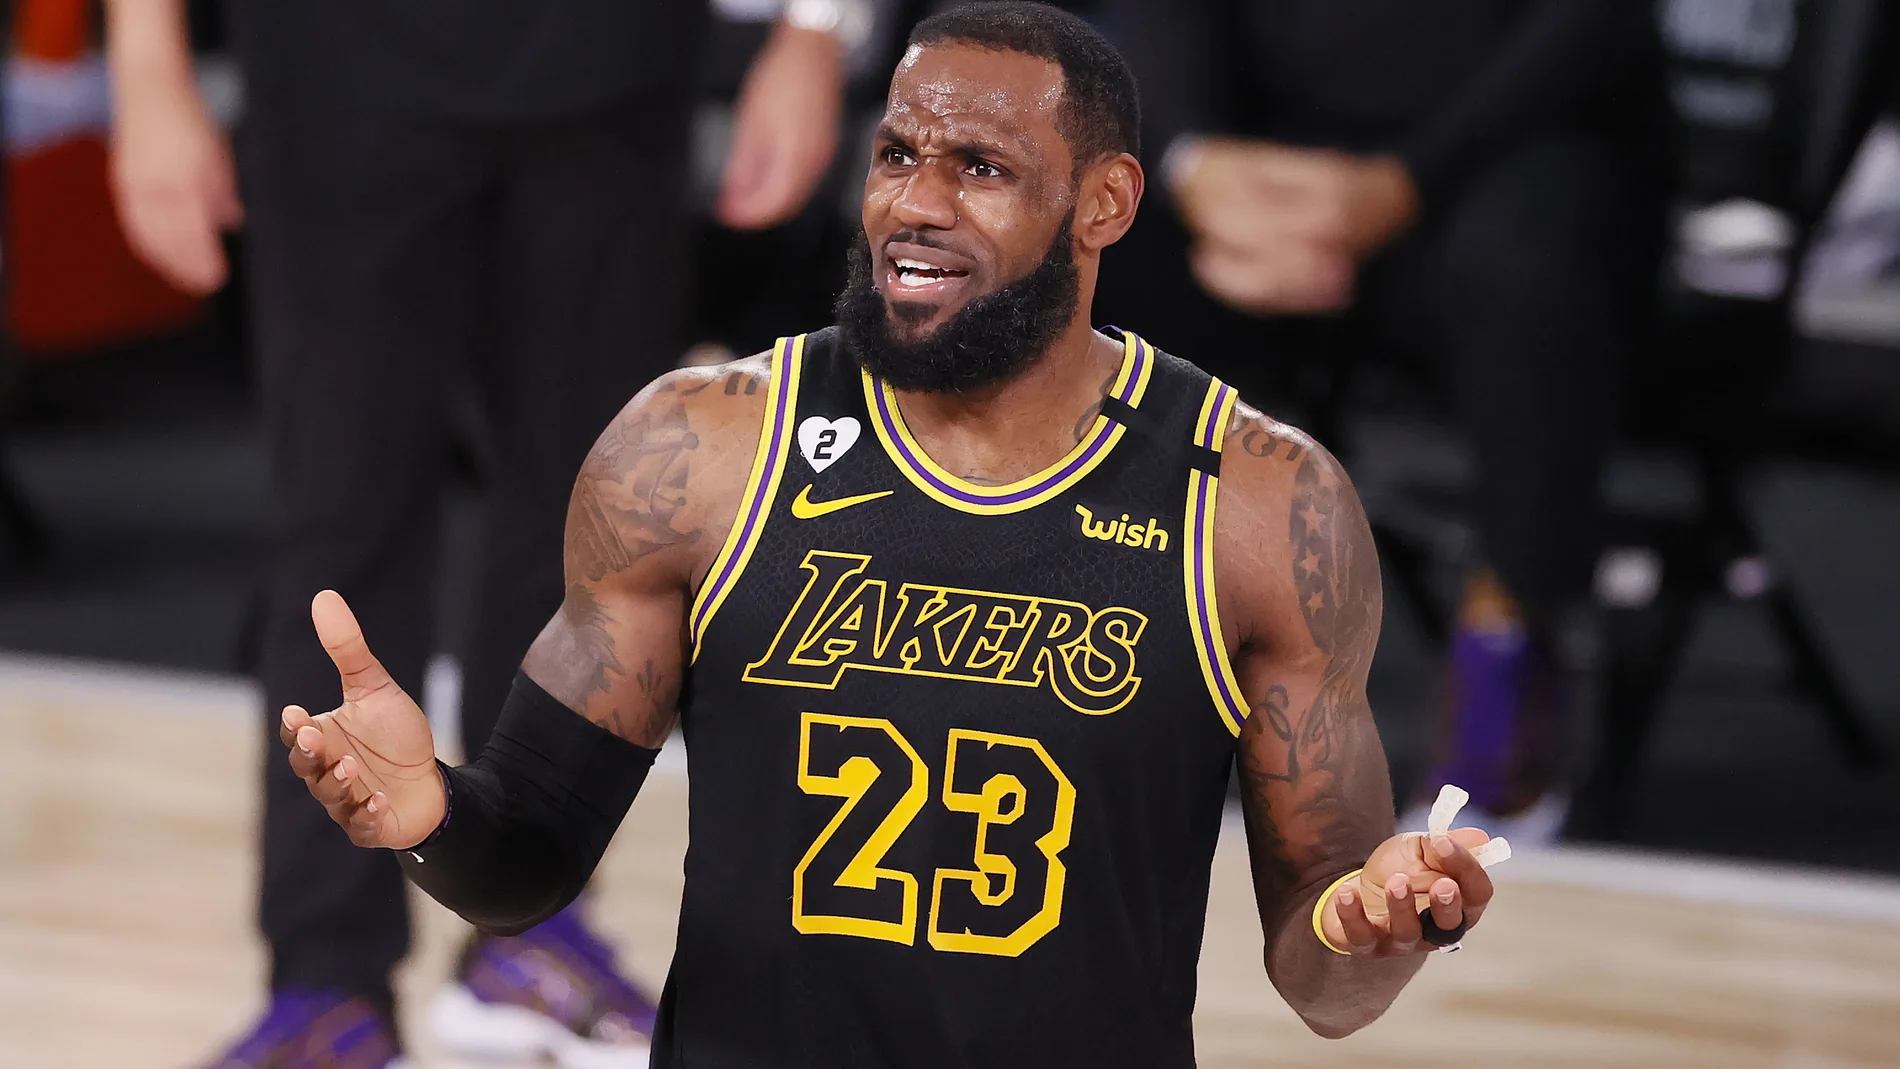 Visible Perseo tornado Los Lakers sufrieron la primera derrota con la camiseta de Kobe Bryant